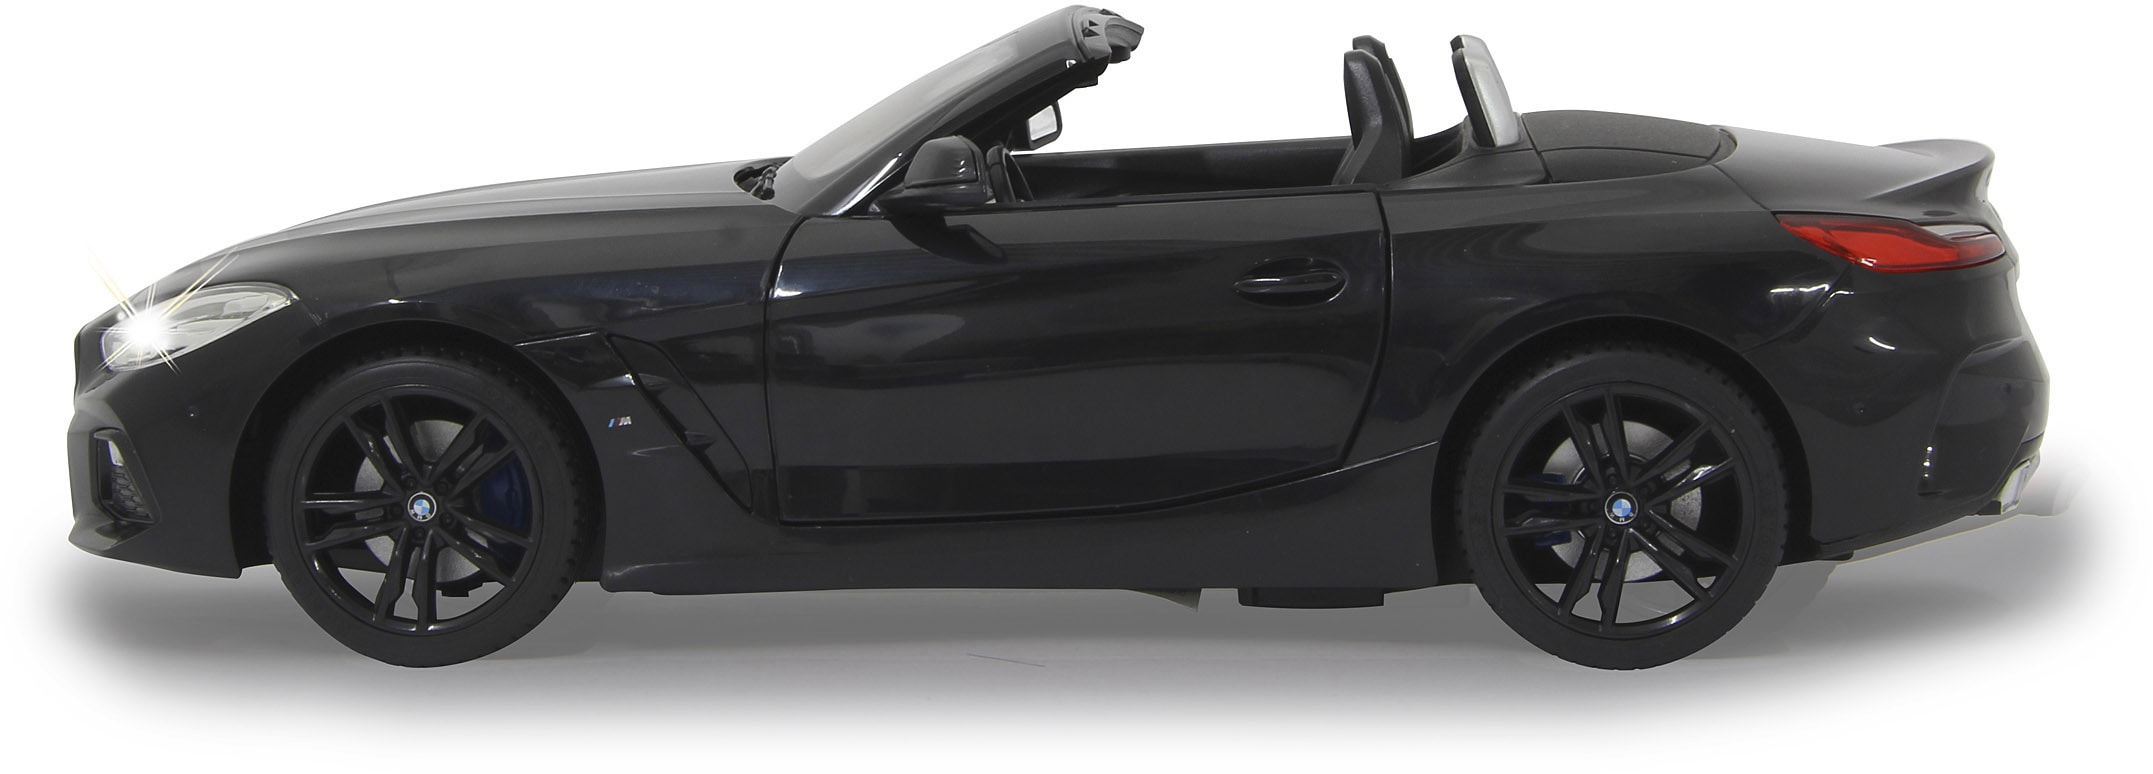 Jamara RC-Auto »BMW Z4 Roadster 1:14 2,4 GHz, schwarz«